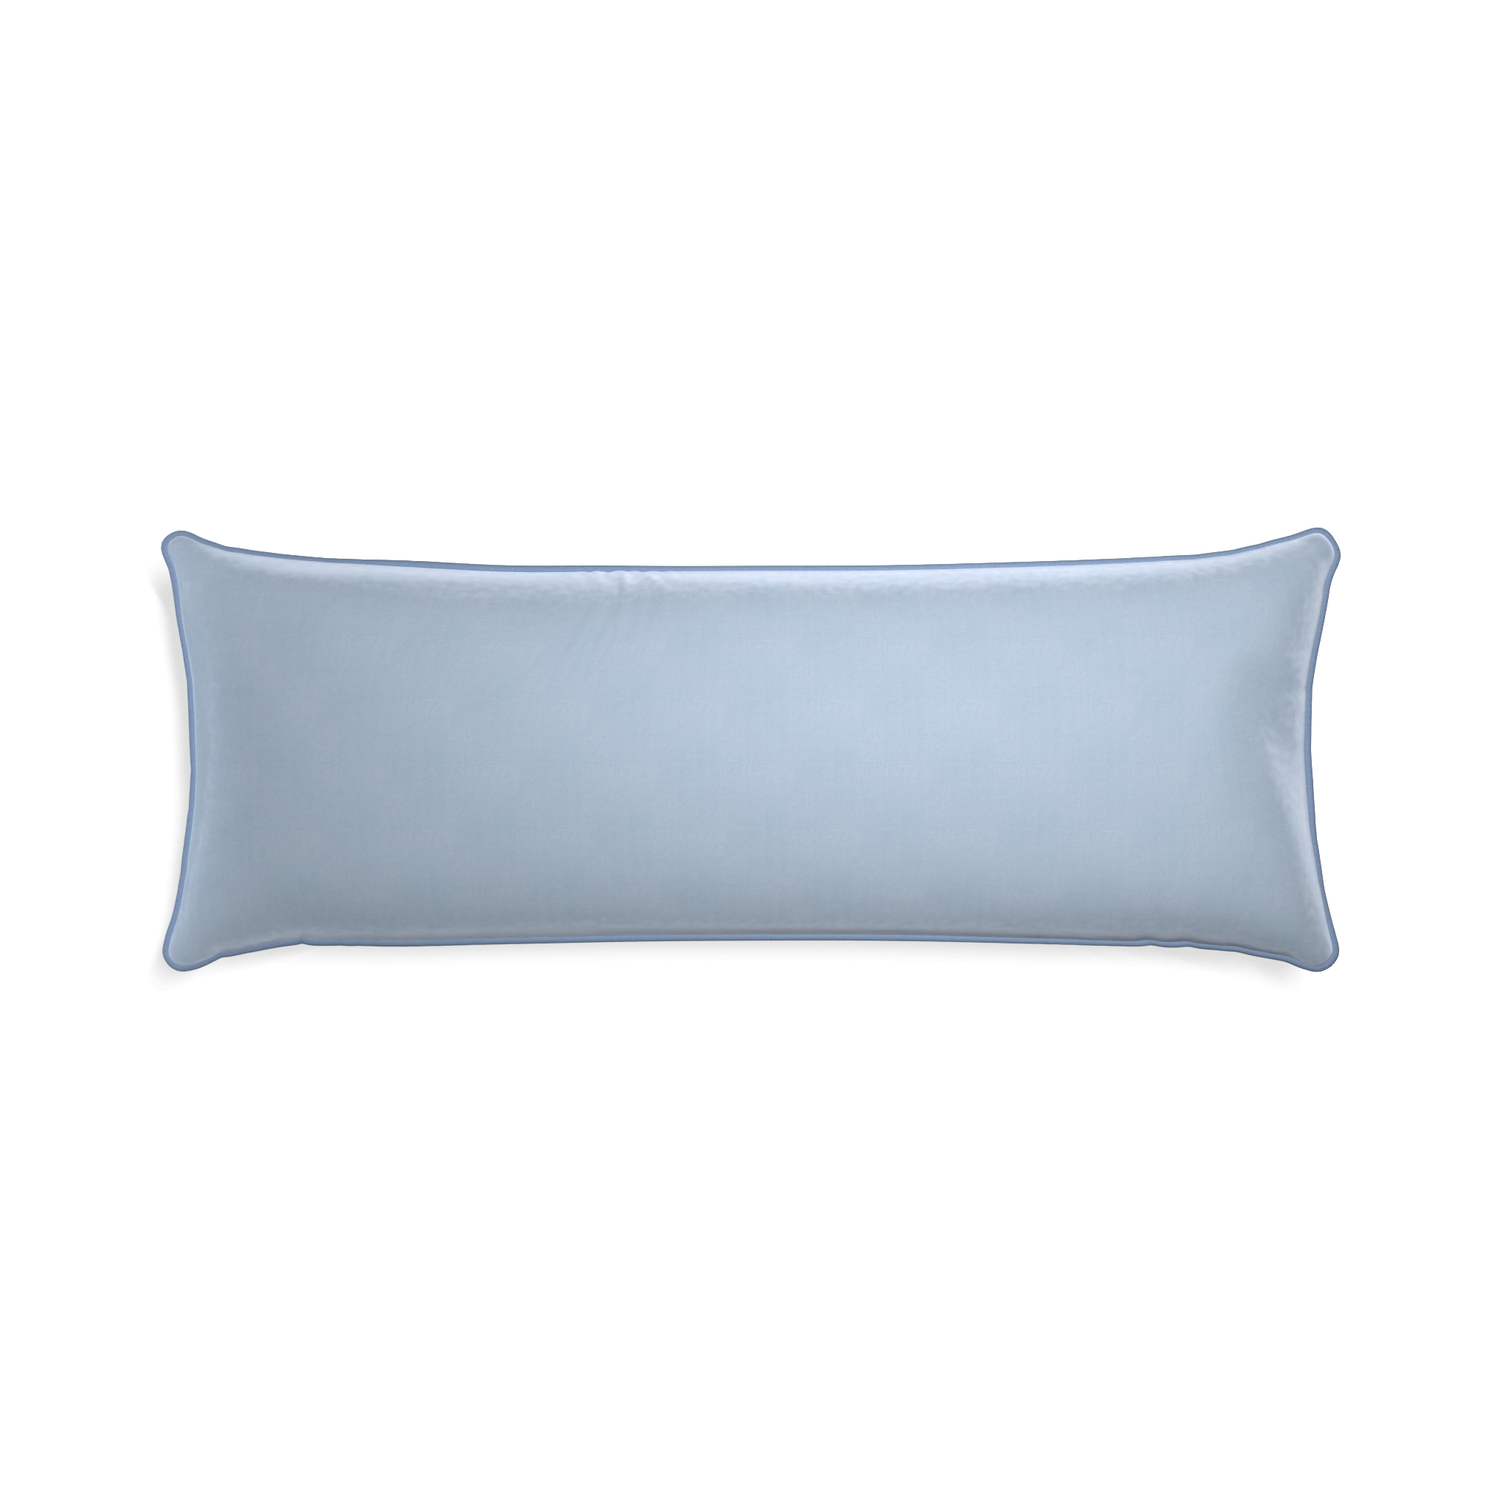 Xl-lumbar sky velvet custom pillow with sky piping on white background